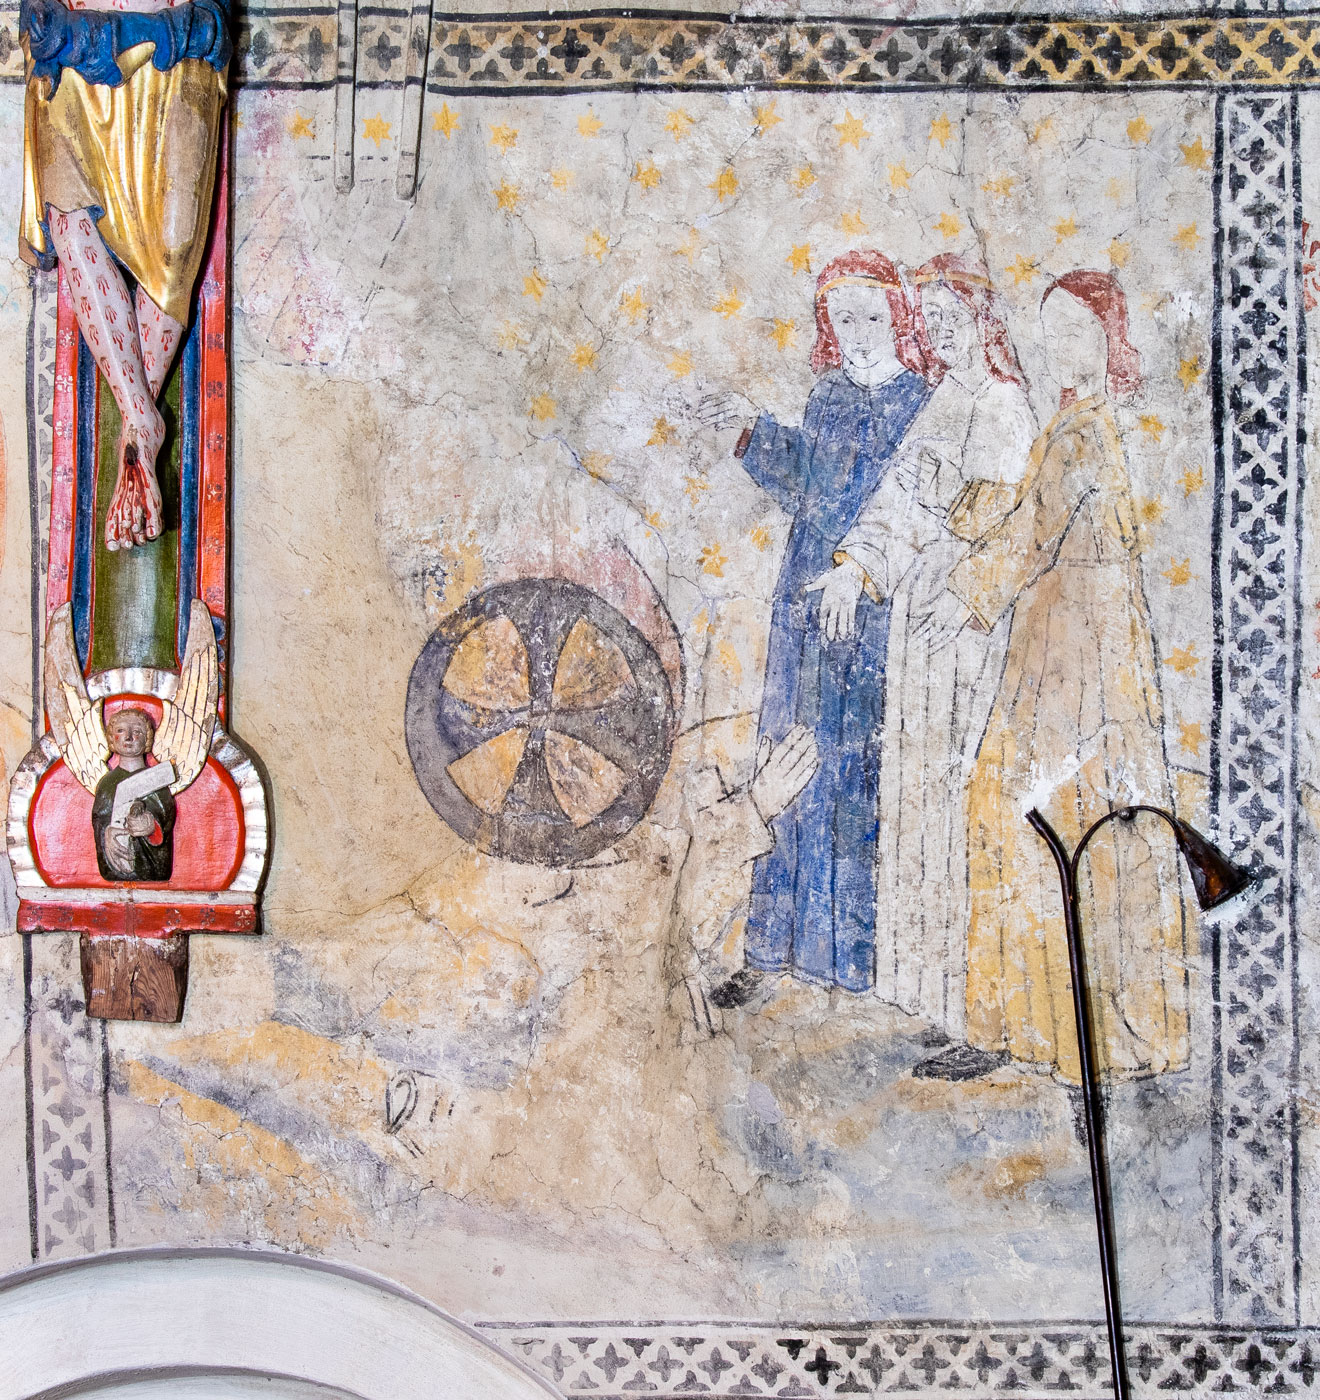 Abraham och de tre änglarna, som beskådar Isaks födelse, förebild till Kristi förklaring - Knutby kyrka